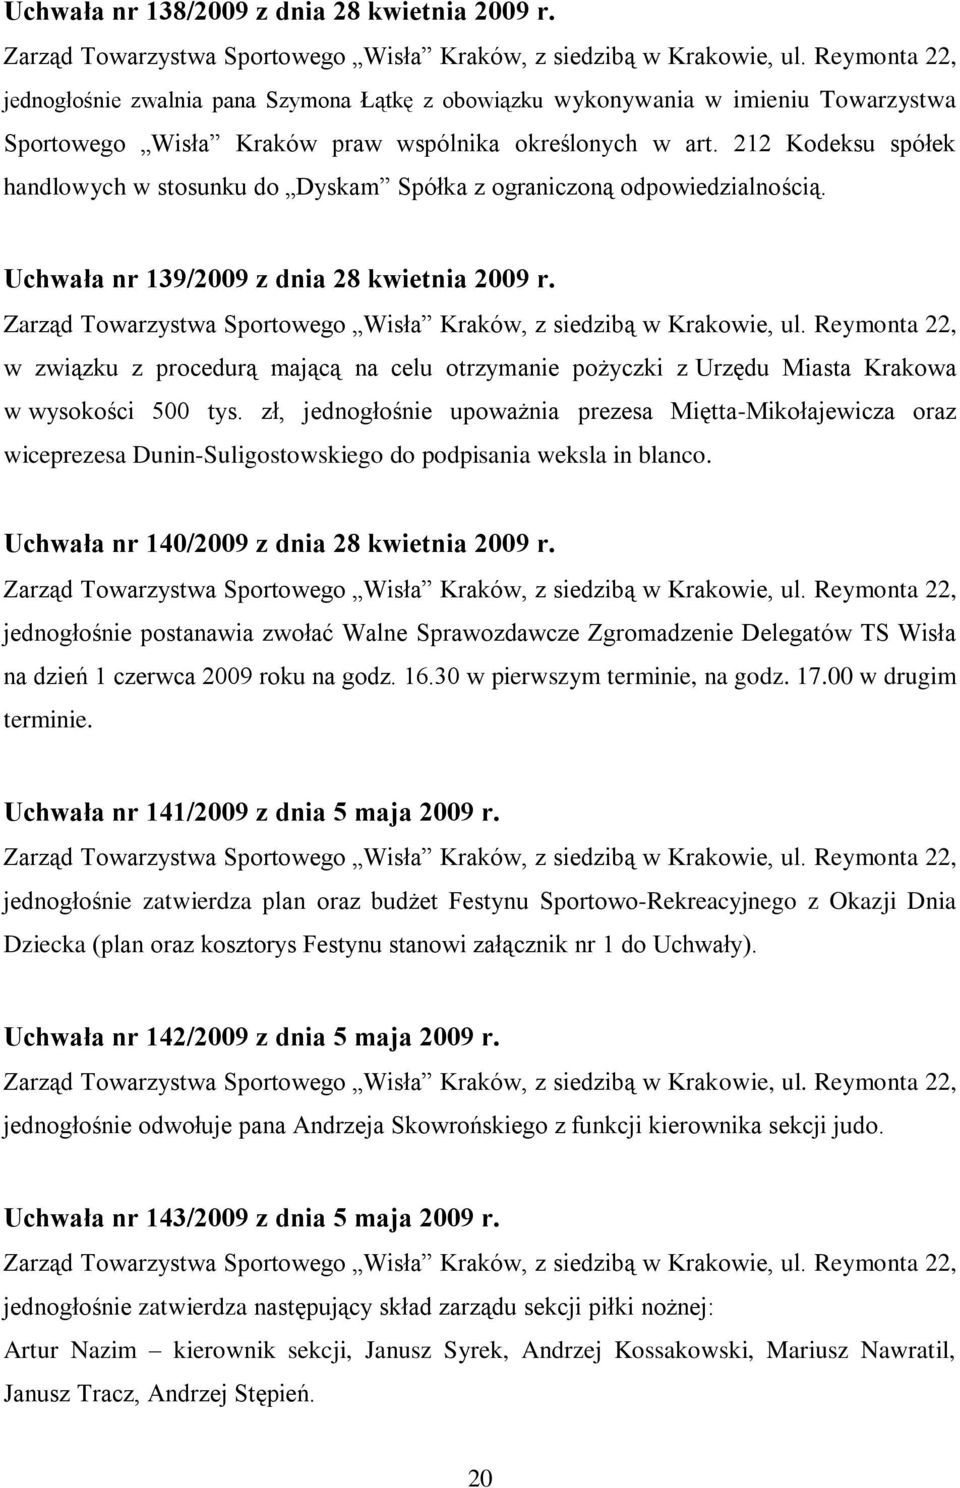 w związku z procedurą mającą na celu otrzymanie pożyczki z Urzędu Miasta Krakowa w wysokości 500 tys.